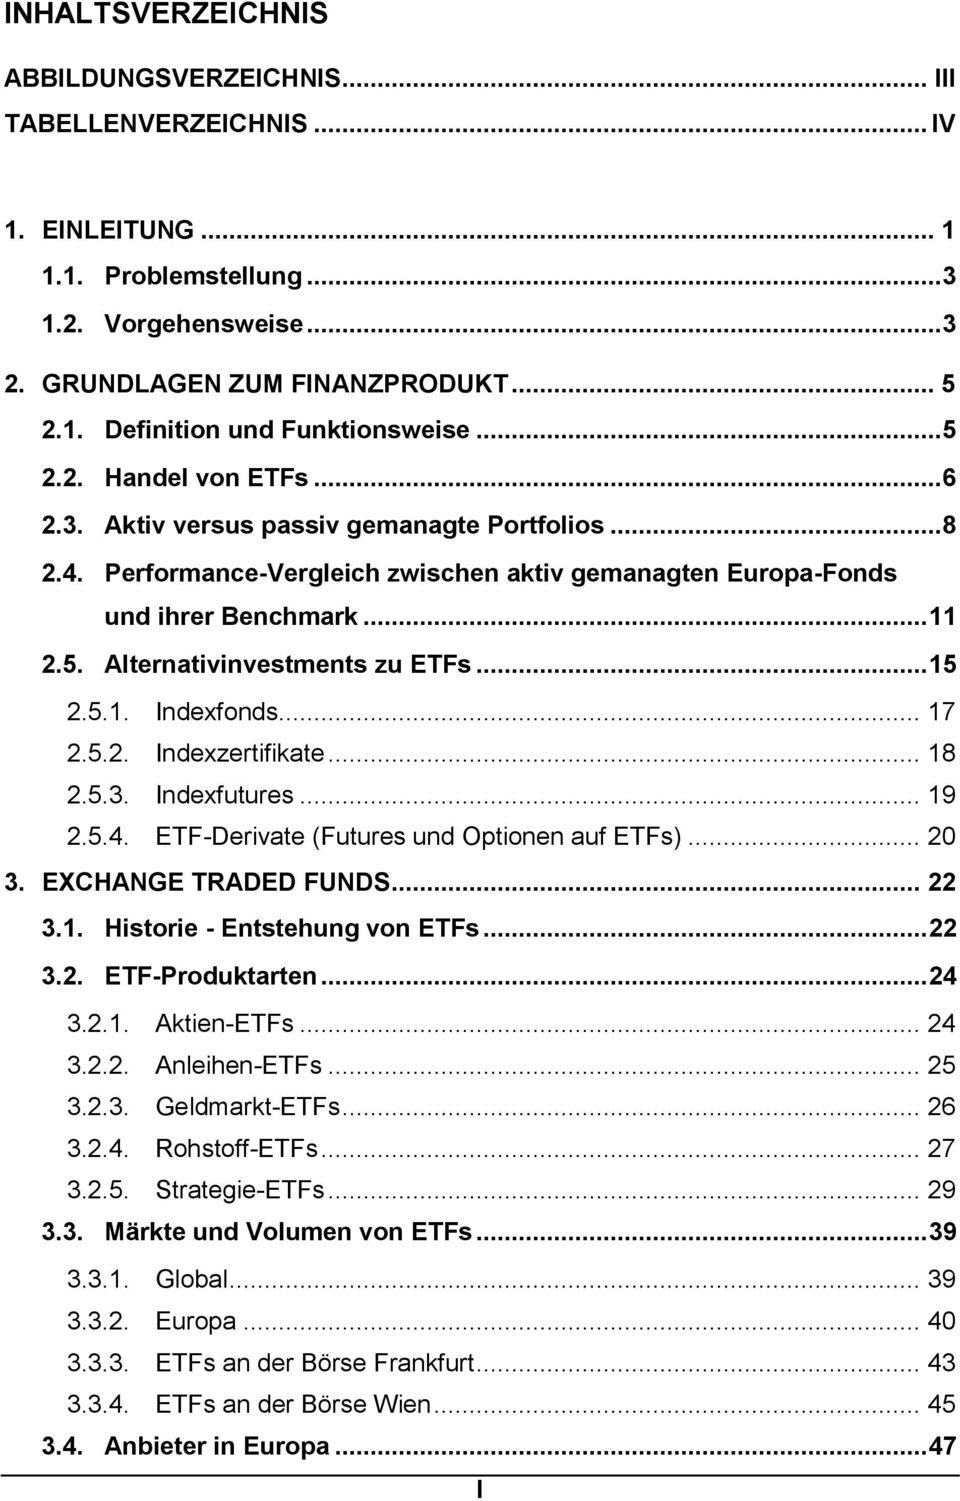 .. 15 2.5.1. Indexfonds... 17 2.5.2. Indexzertifikate... 18 2.5.3. Indexfutures... 19 2.5.4. ETF-Derivate (Futures und Optionen auf ETFs)... 20 3. EXCHANGE TRADED FUNDS... 22 3.1. Historie - Entstehung von ETFs.